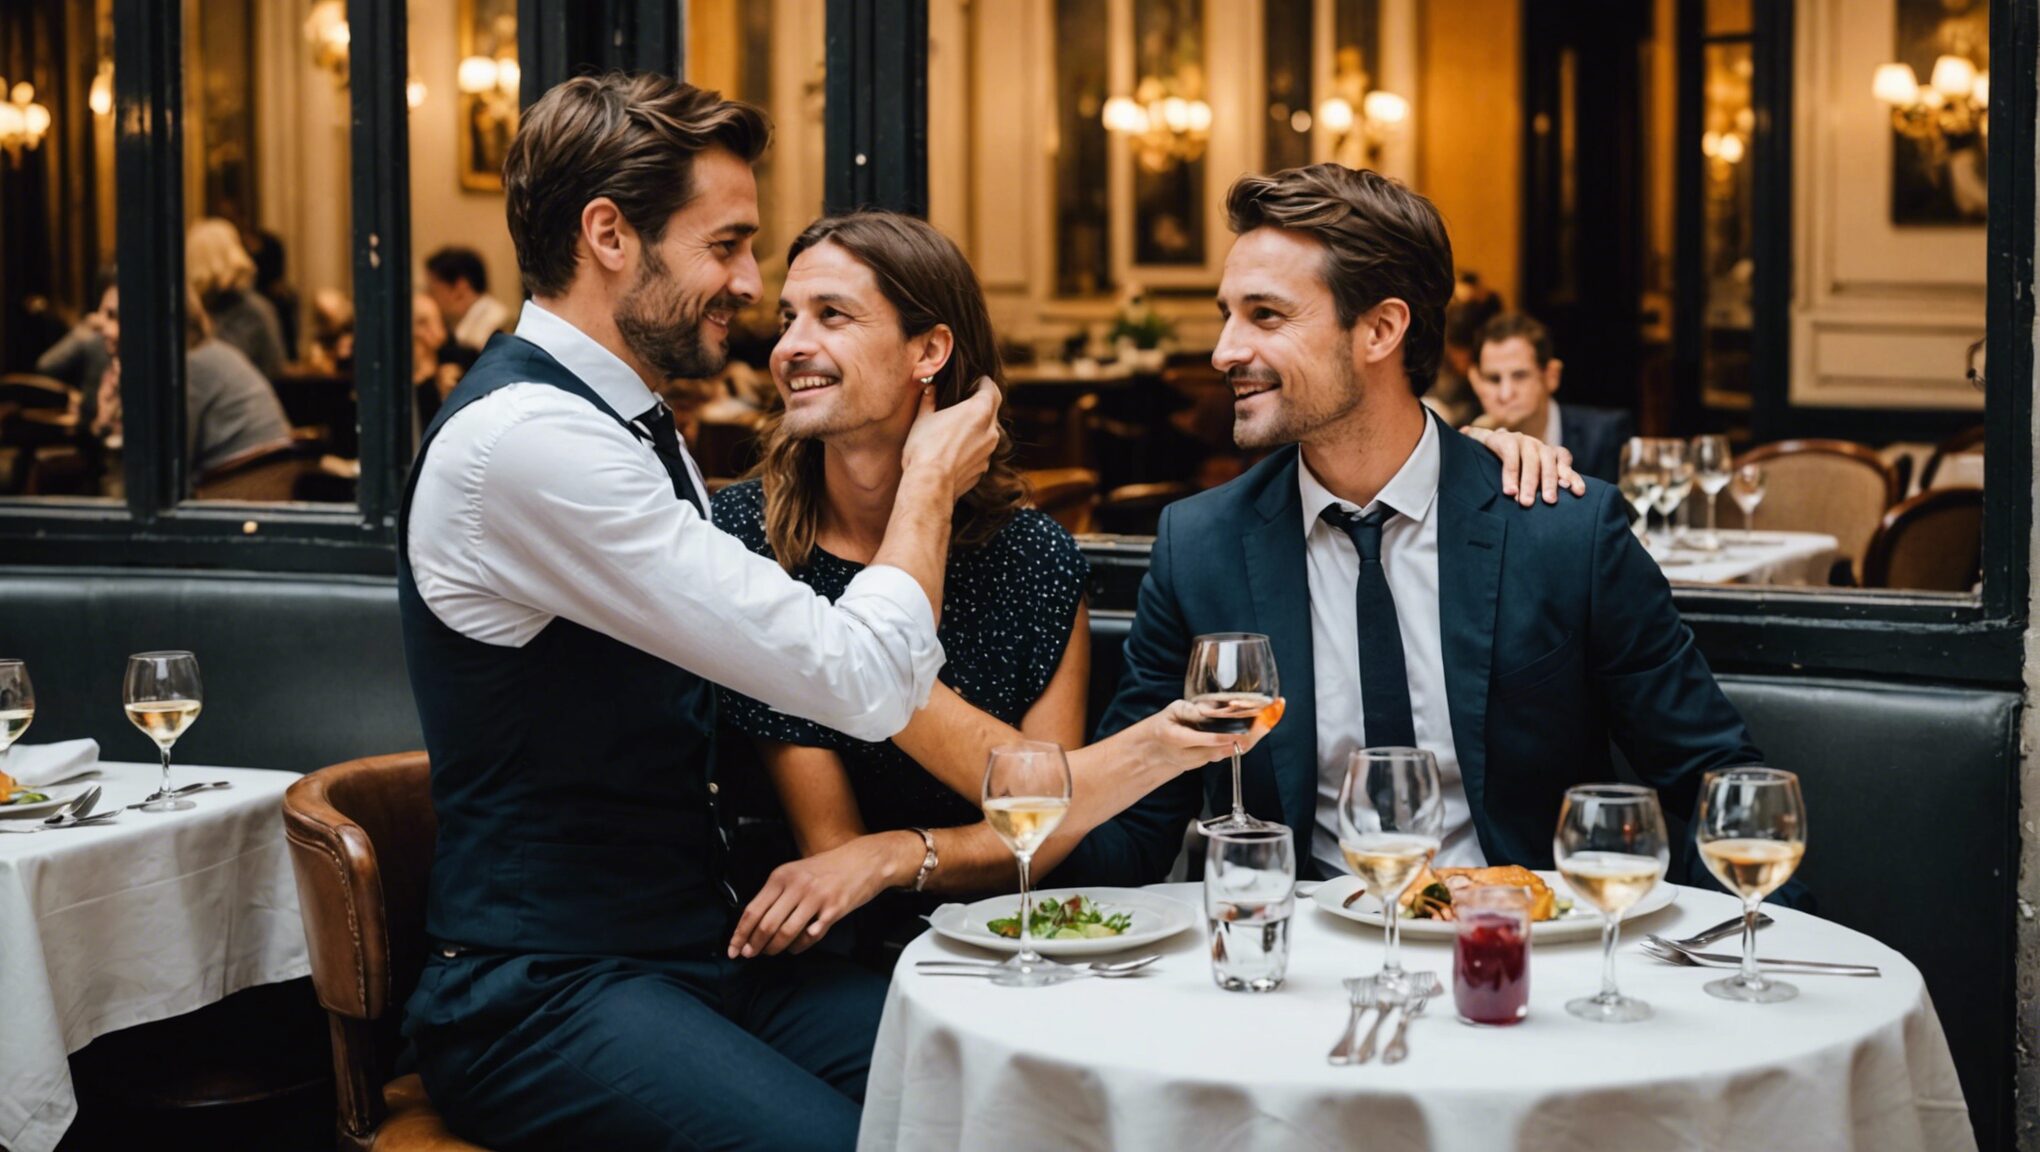 découvrez les secrets des 7 restaurants parisiens pour un dîner romantique inoubliable en couple. profitez d'un week-end magique à paris pour des moments inoubliables.